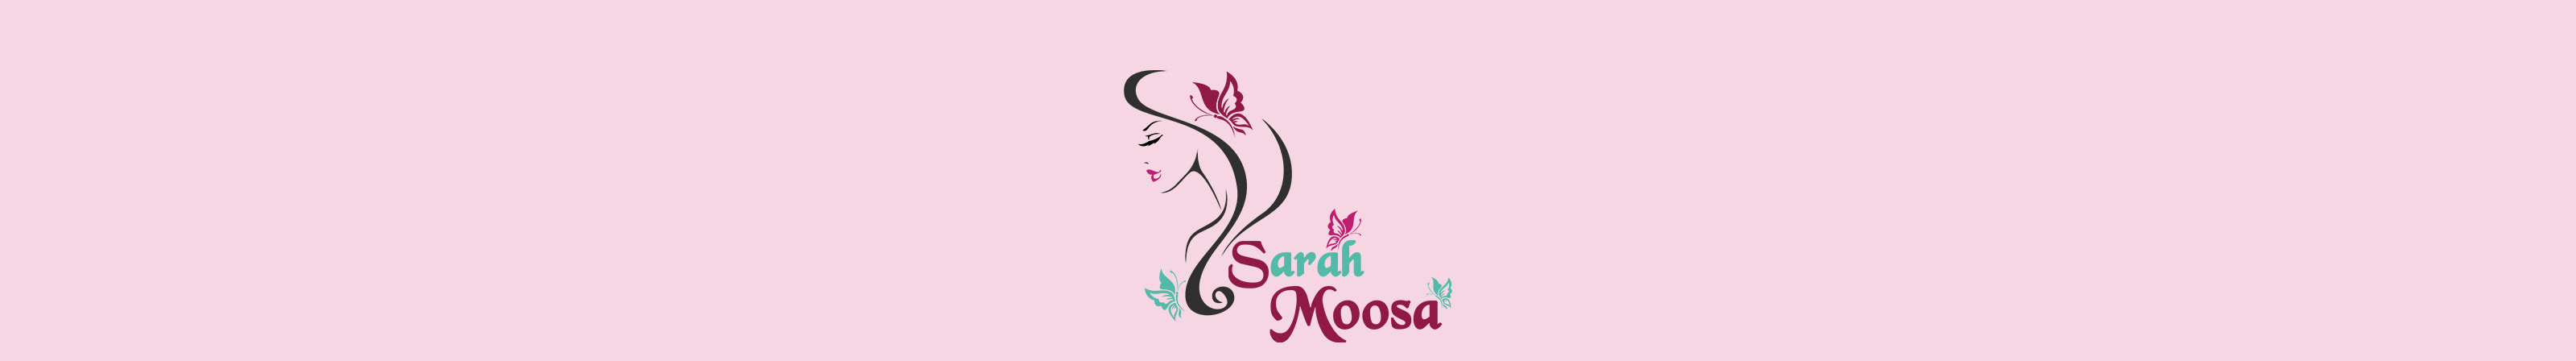 Banner de perfil de sarah moosa